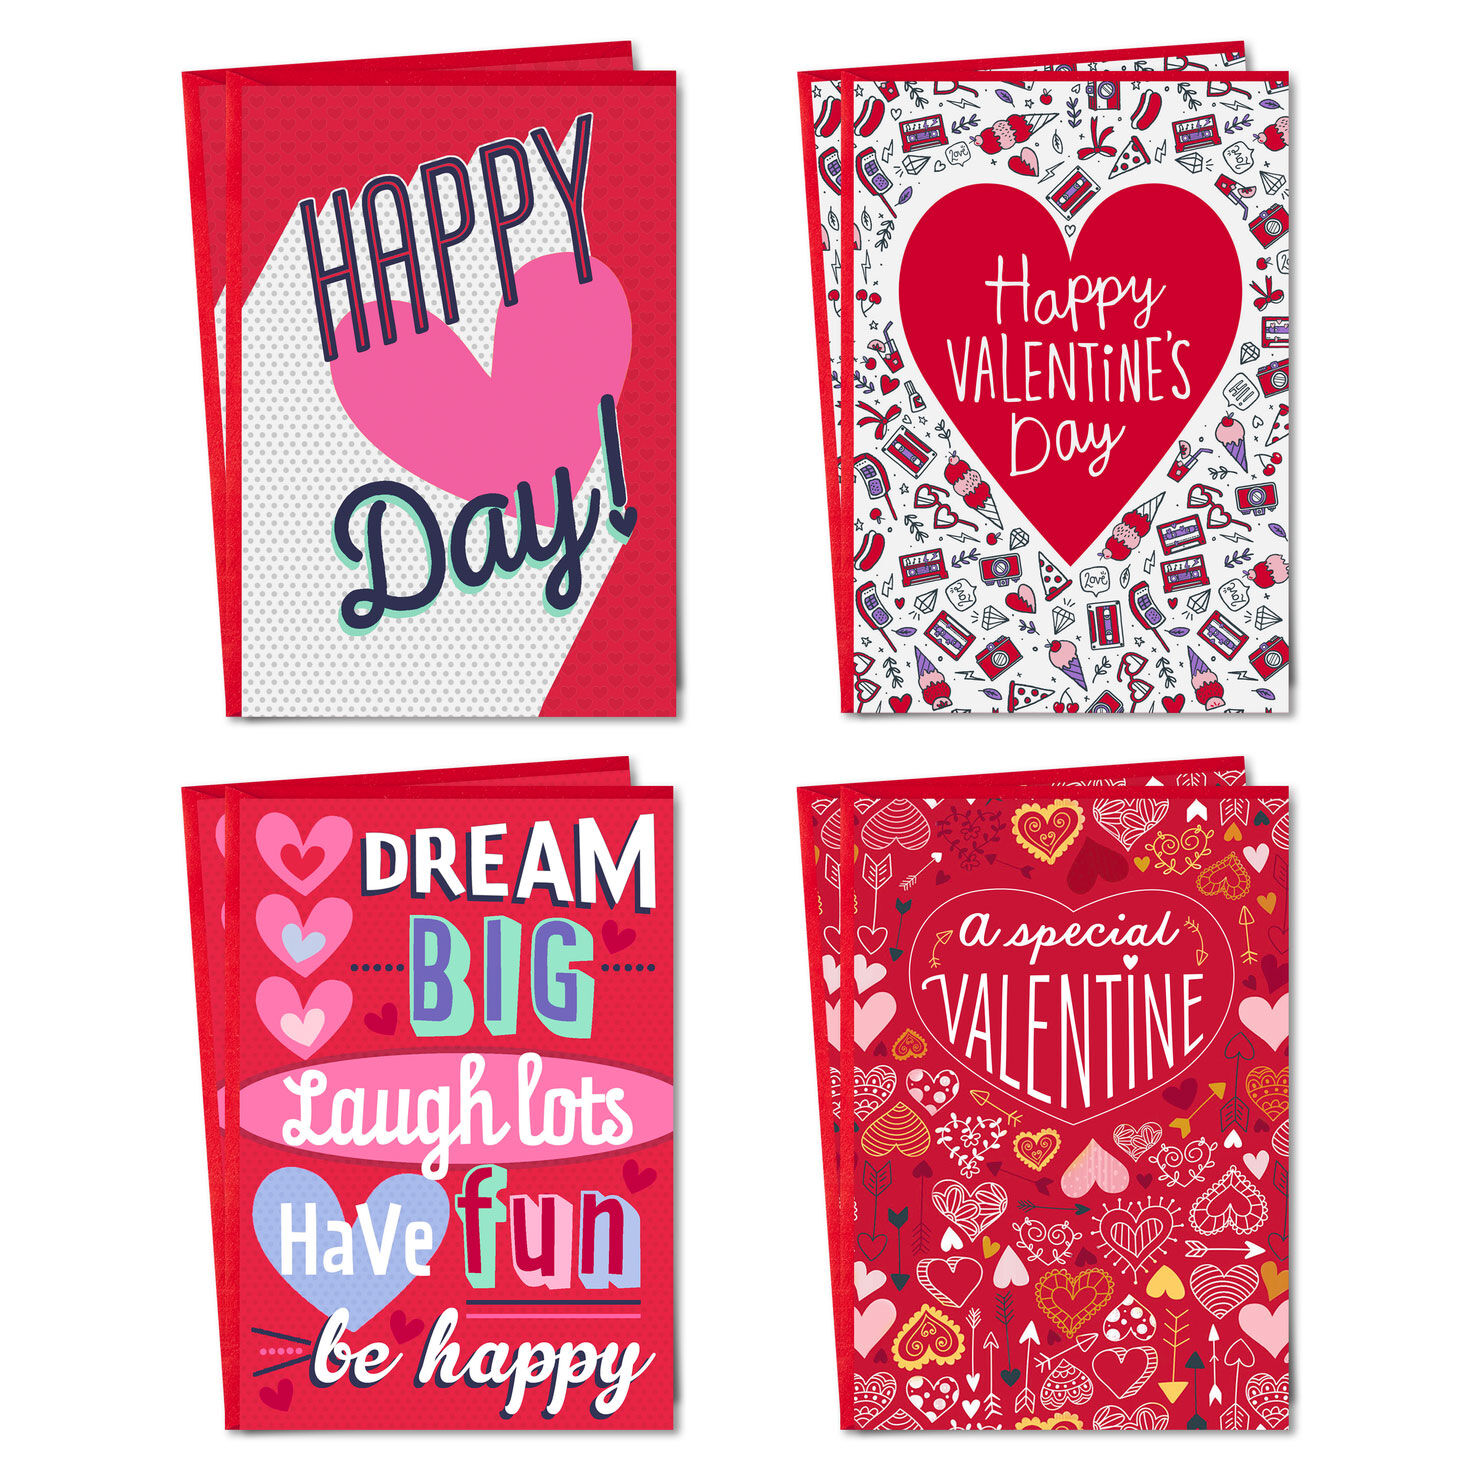 Valentine's Day Crafts  Hallmark Ideas & Inspiration